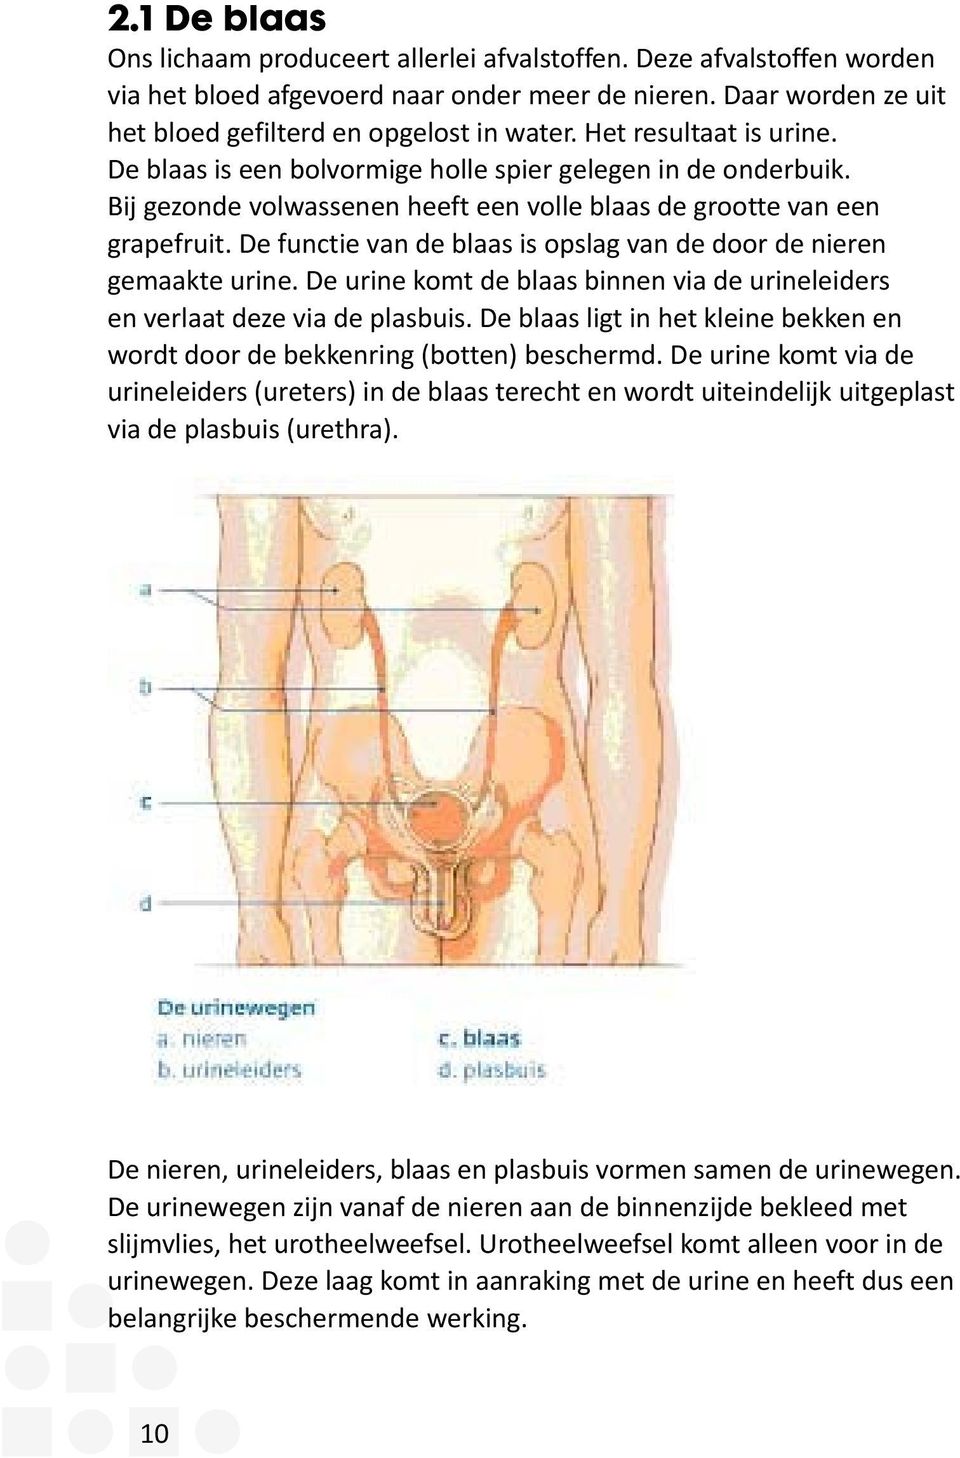 De functie van de blaas is opslag van de door de nieren gemaakte urine. De urine komt de blaas binnen via de urineleiders en verlaat deze via de plasbuis.